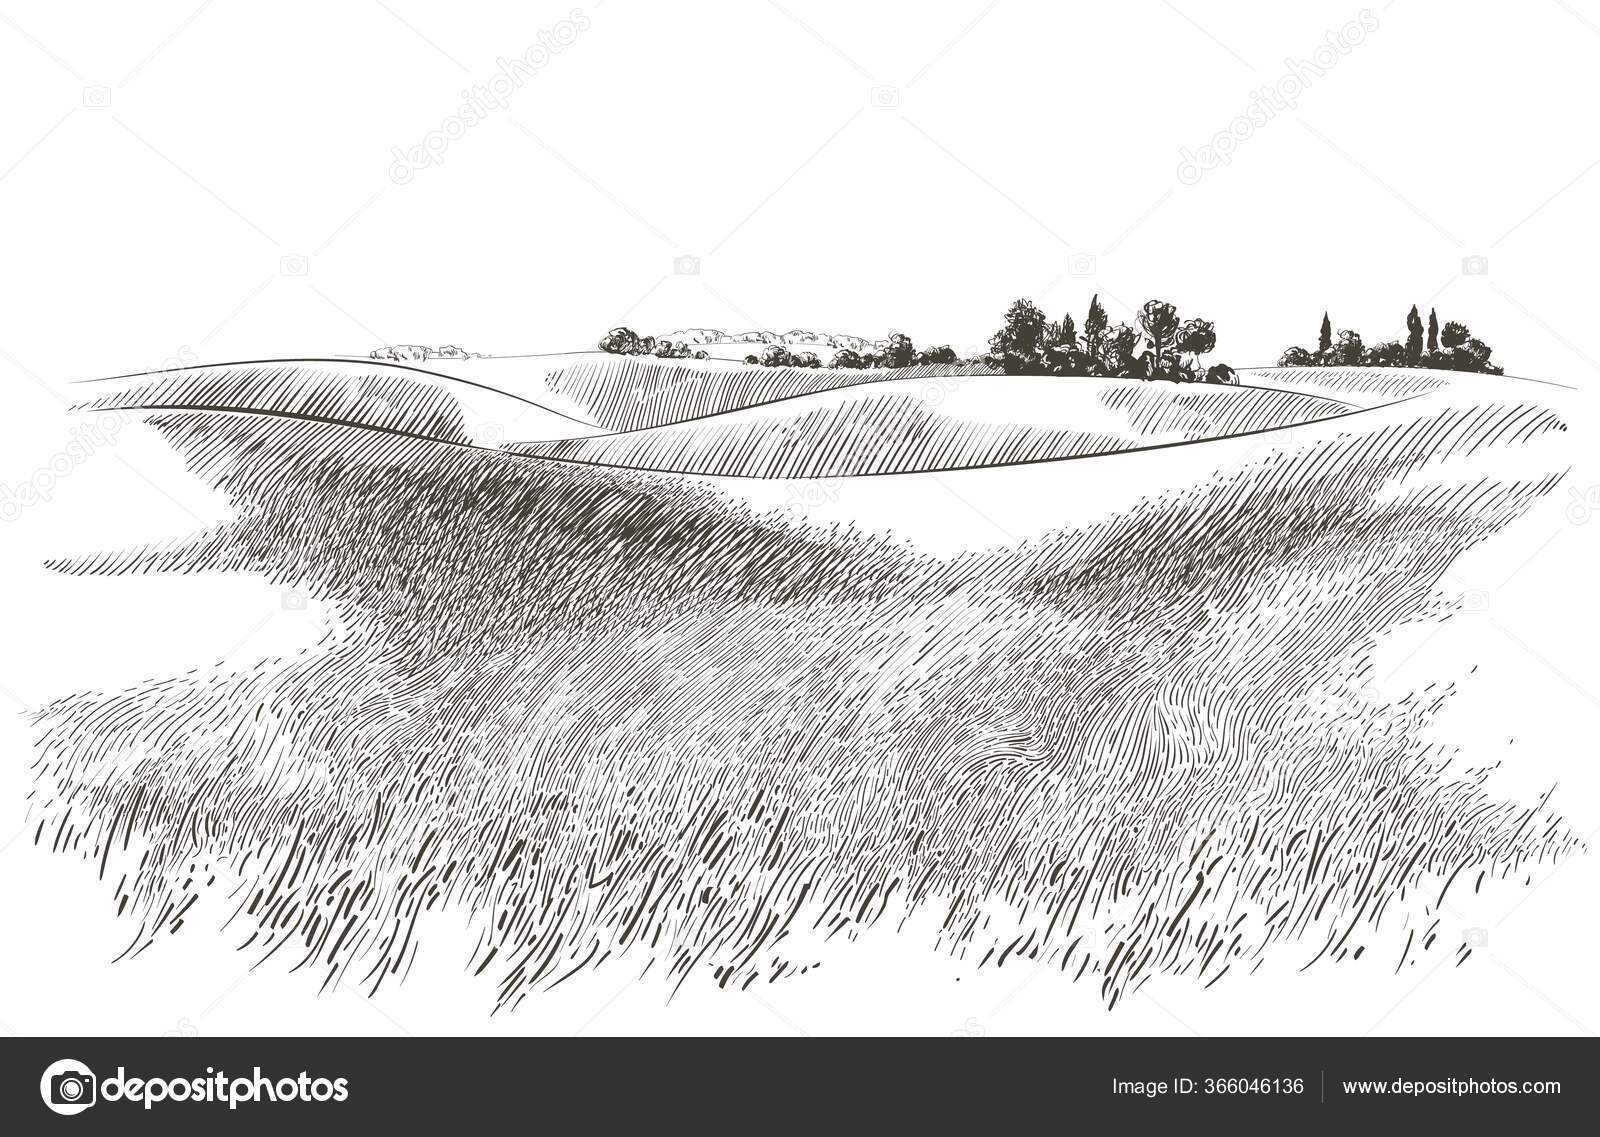 https://st3.depositphotos.com/8223456/36604/v/1600/depositphotos_366046136-stock-illustration-vector-sketch-green-grass-field.jpg